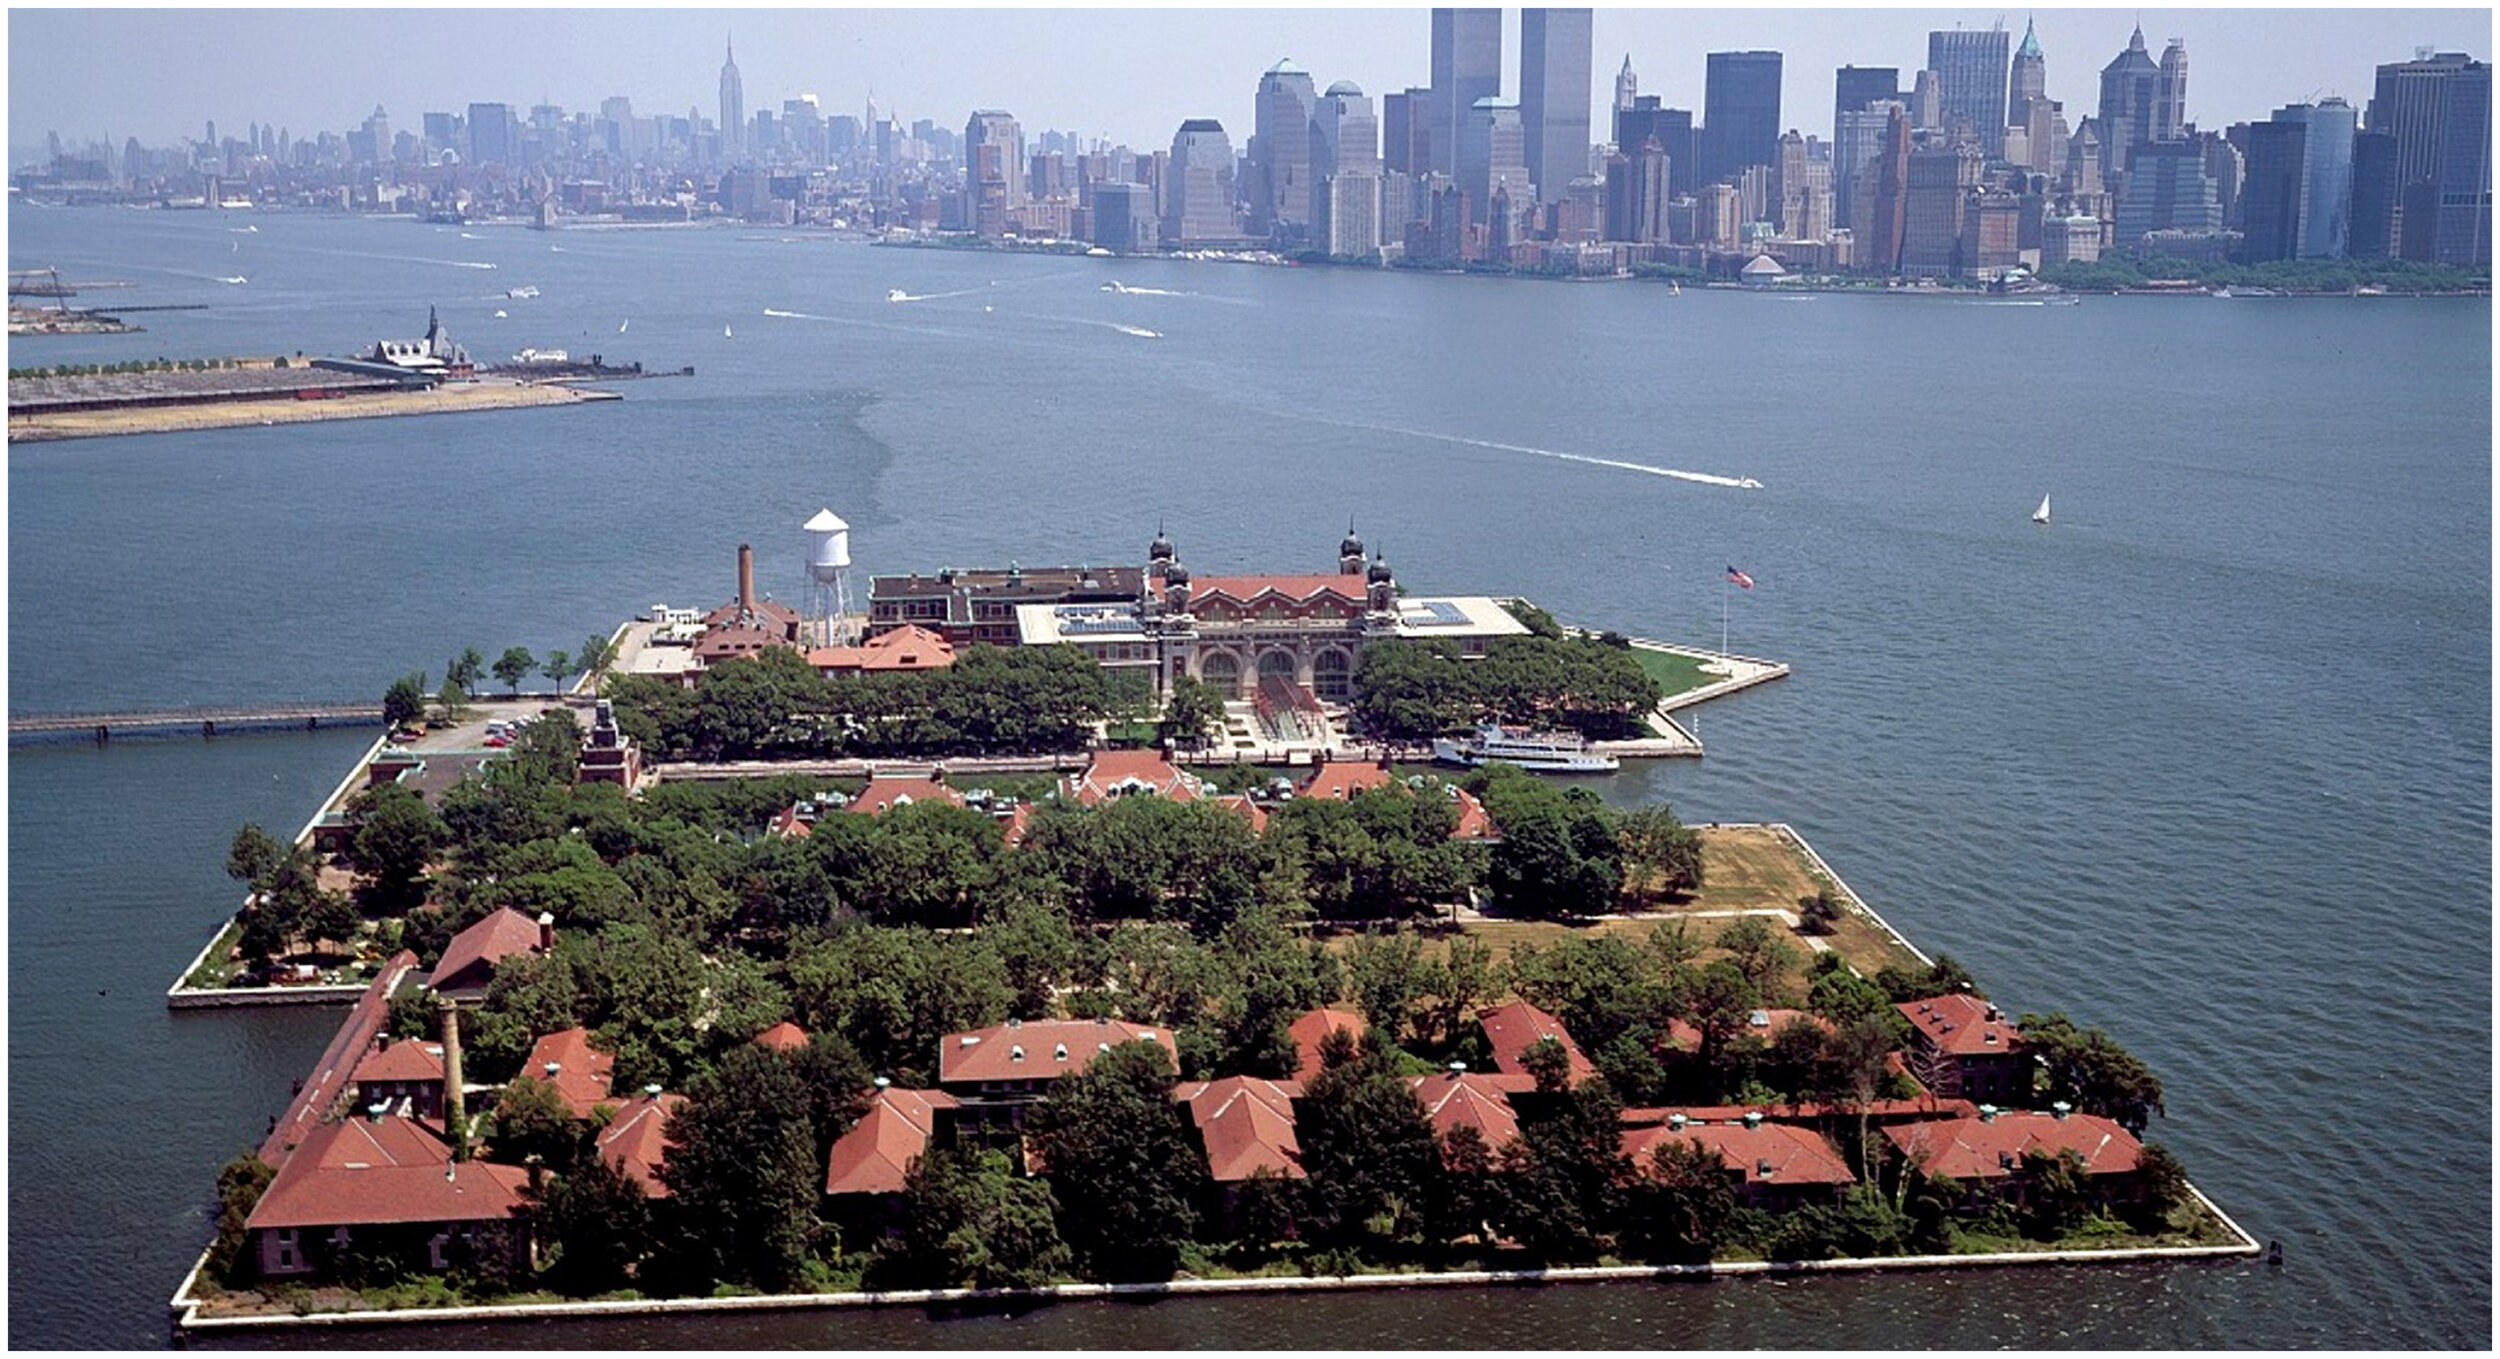 Put to a new use on Ellis Island, the - Save Ellis Island